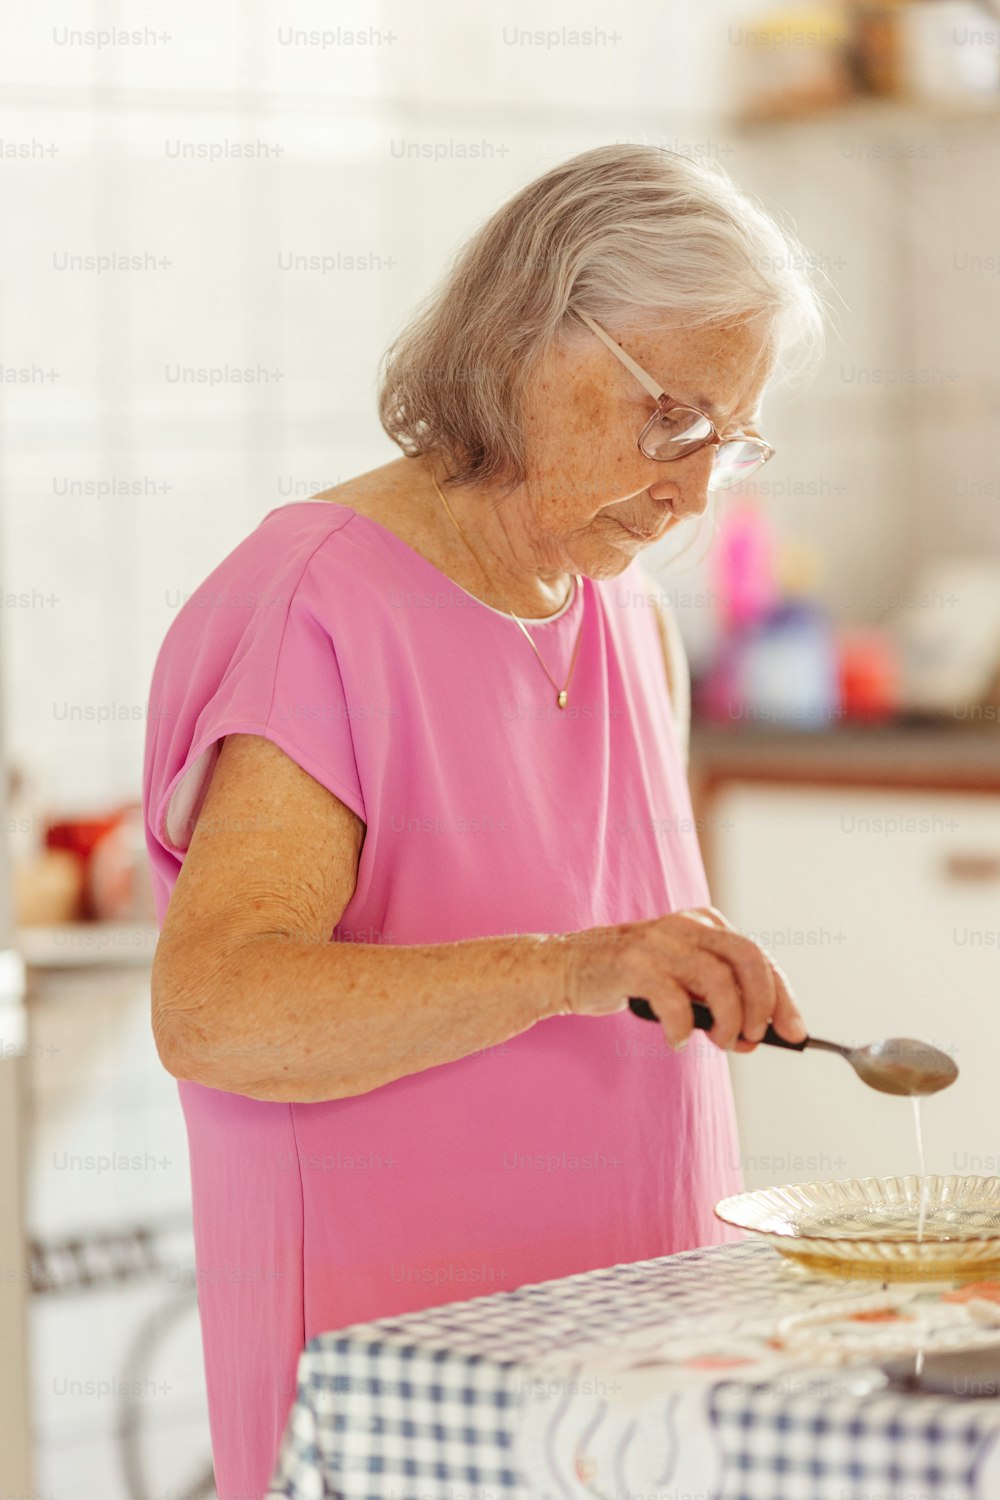 Una mujer con una camisa rosa está preparando comida